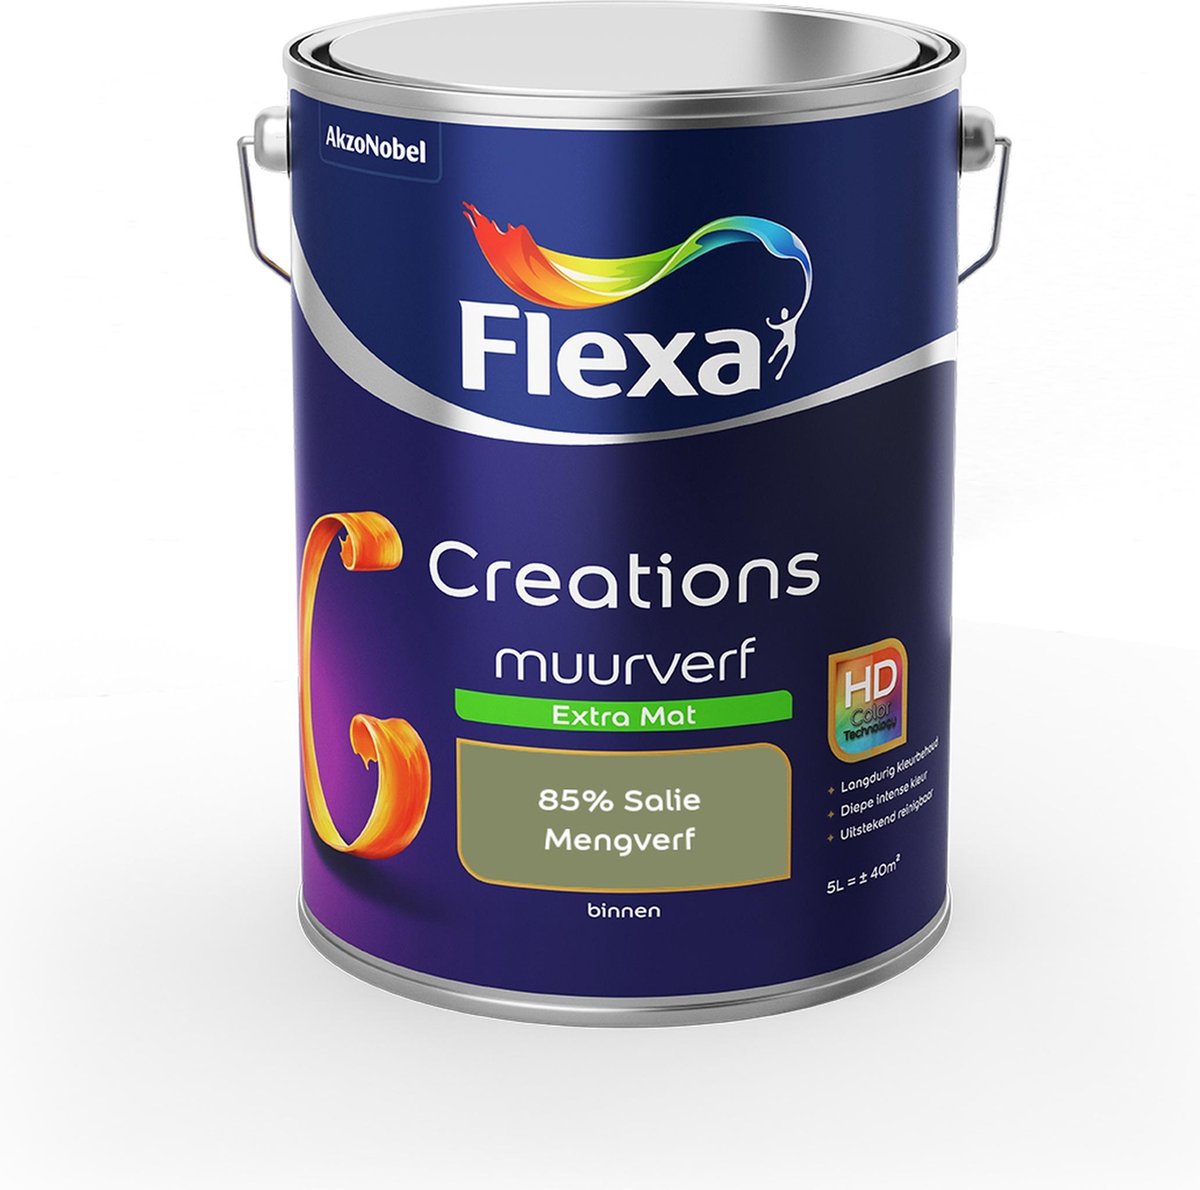 Flexa Creations Muurverf - Extra Mat - Mengkleuren Collectie - 85% Salie - 5 liter